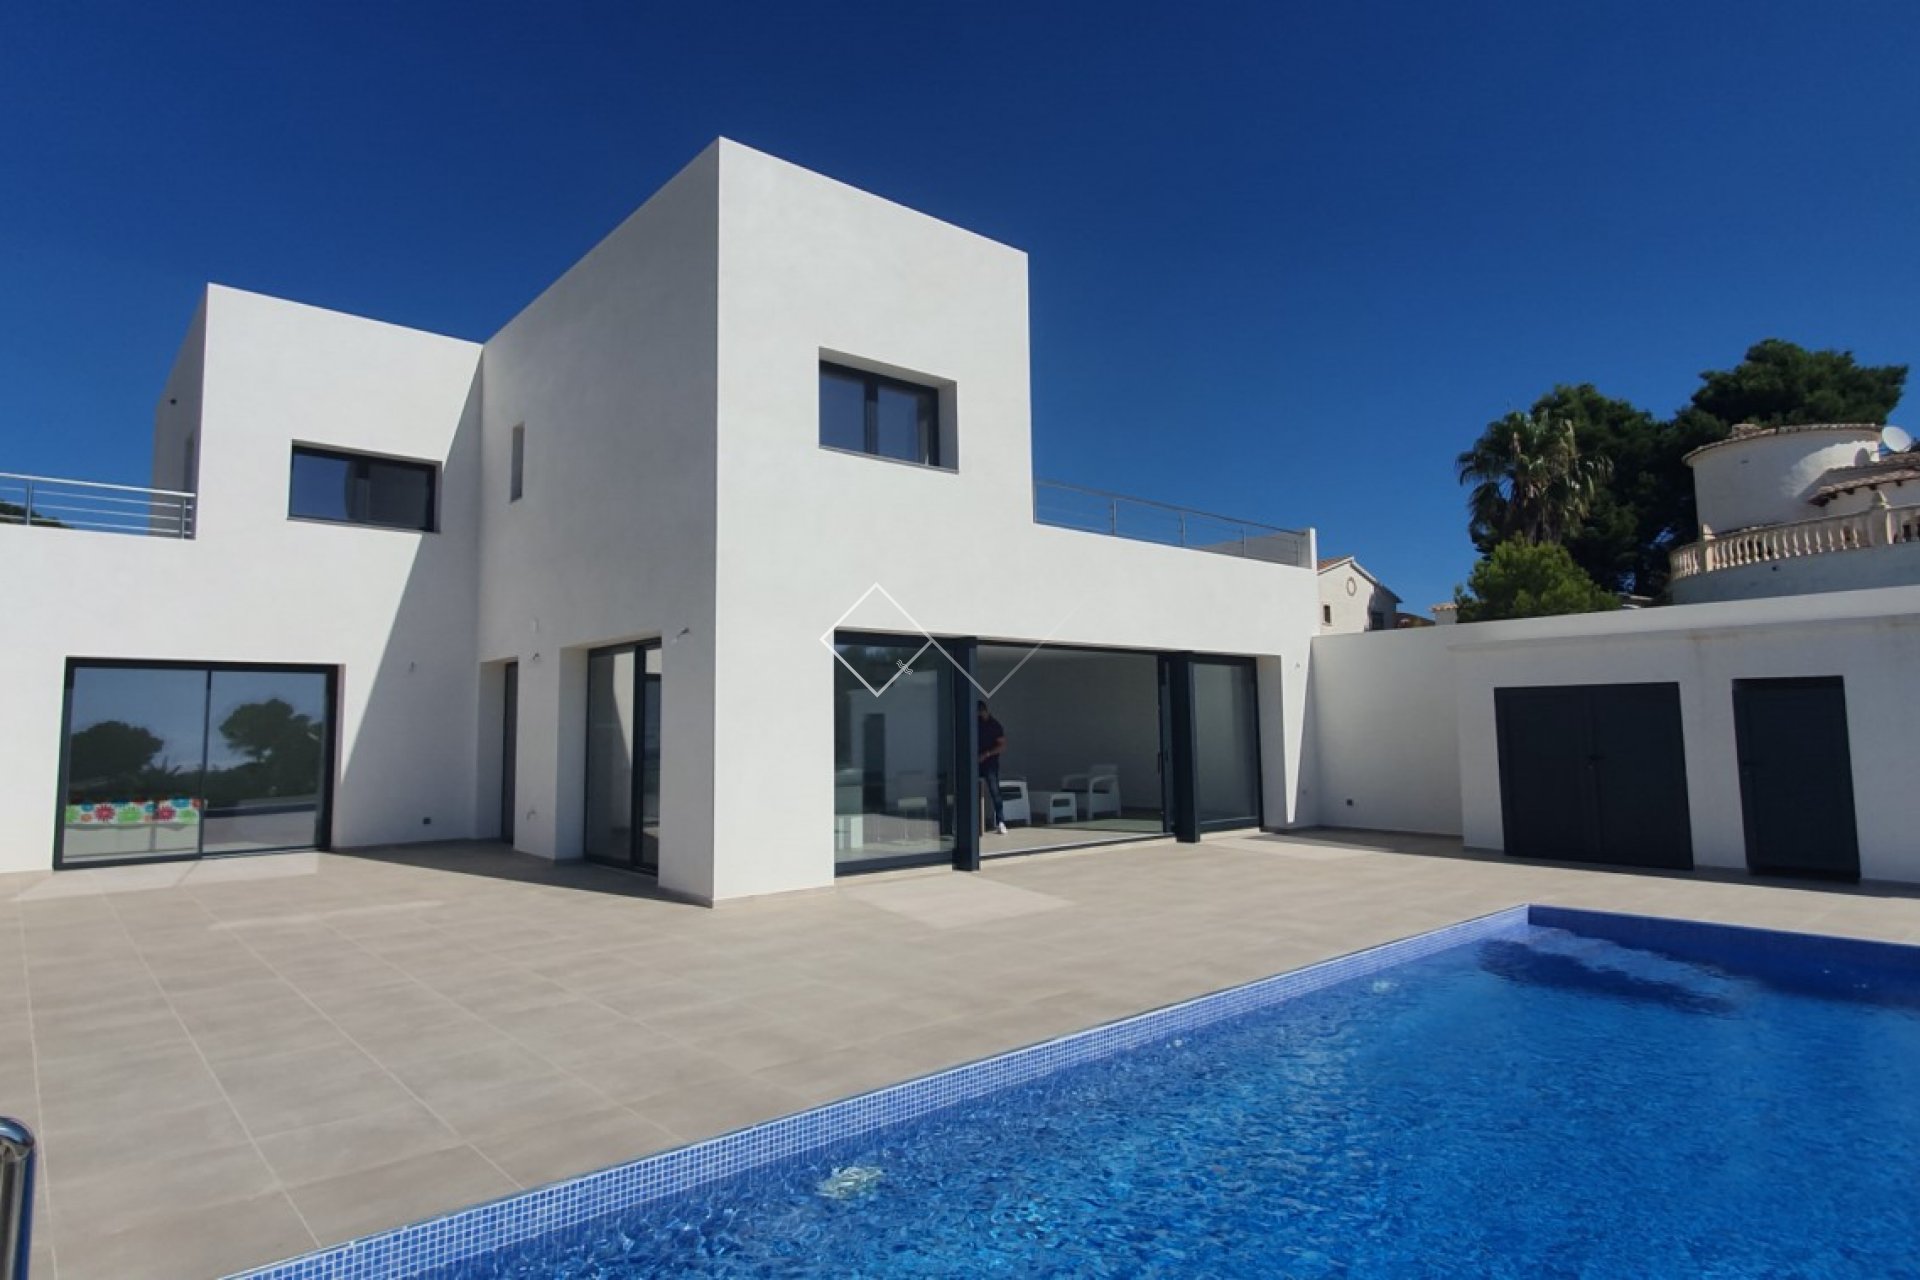 Villa-Moderno chalet de lujo, situado cerca de la playa y con vistas al mar Mediterráneo.